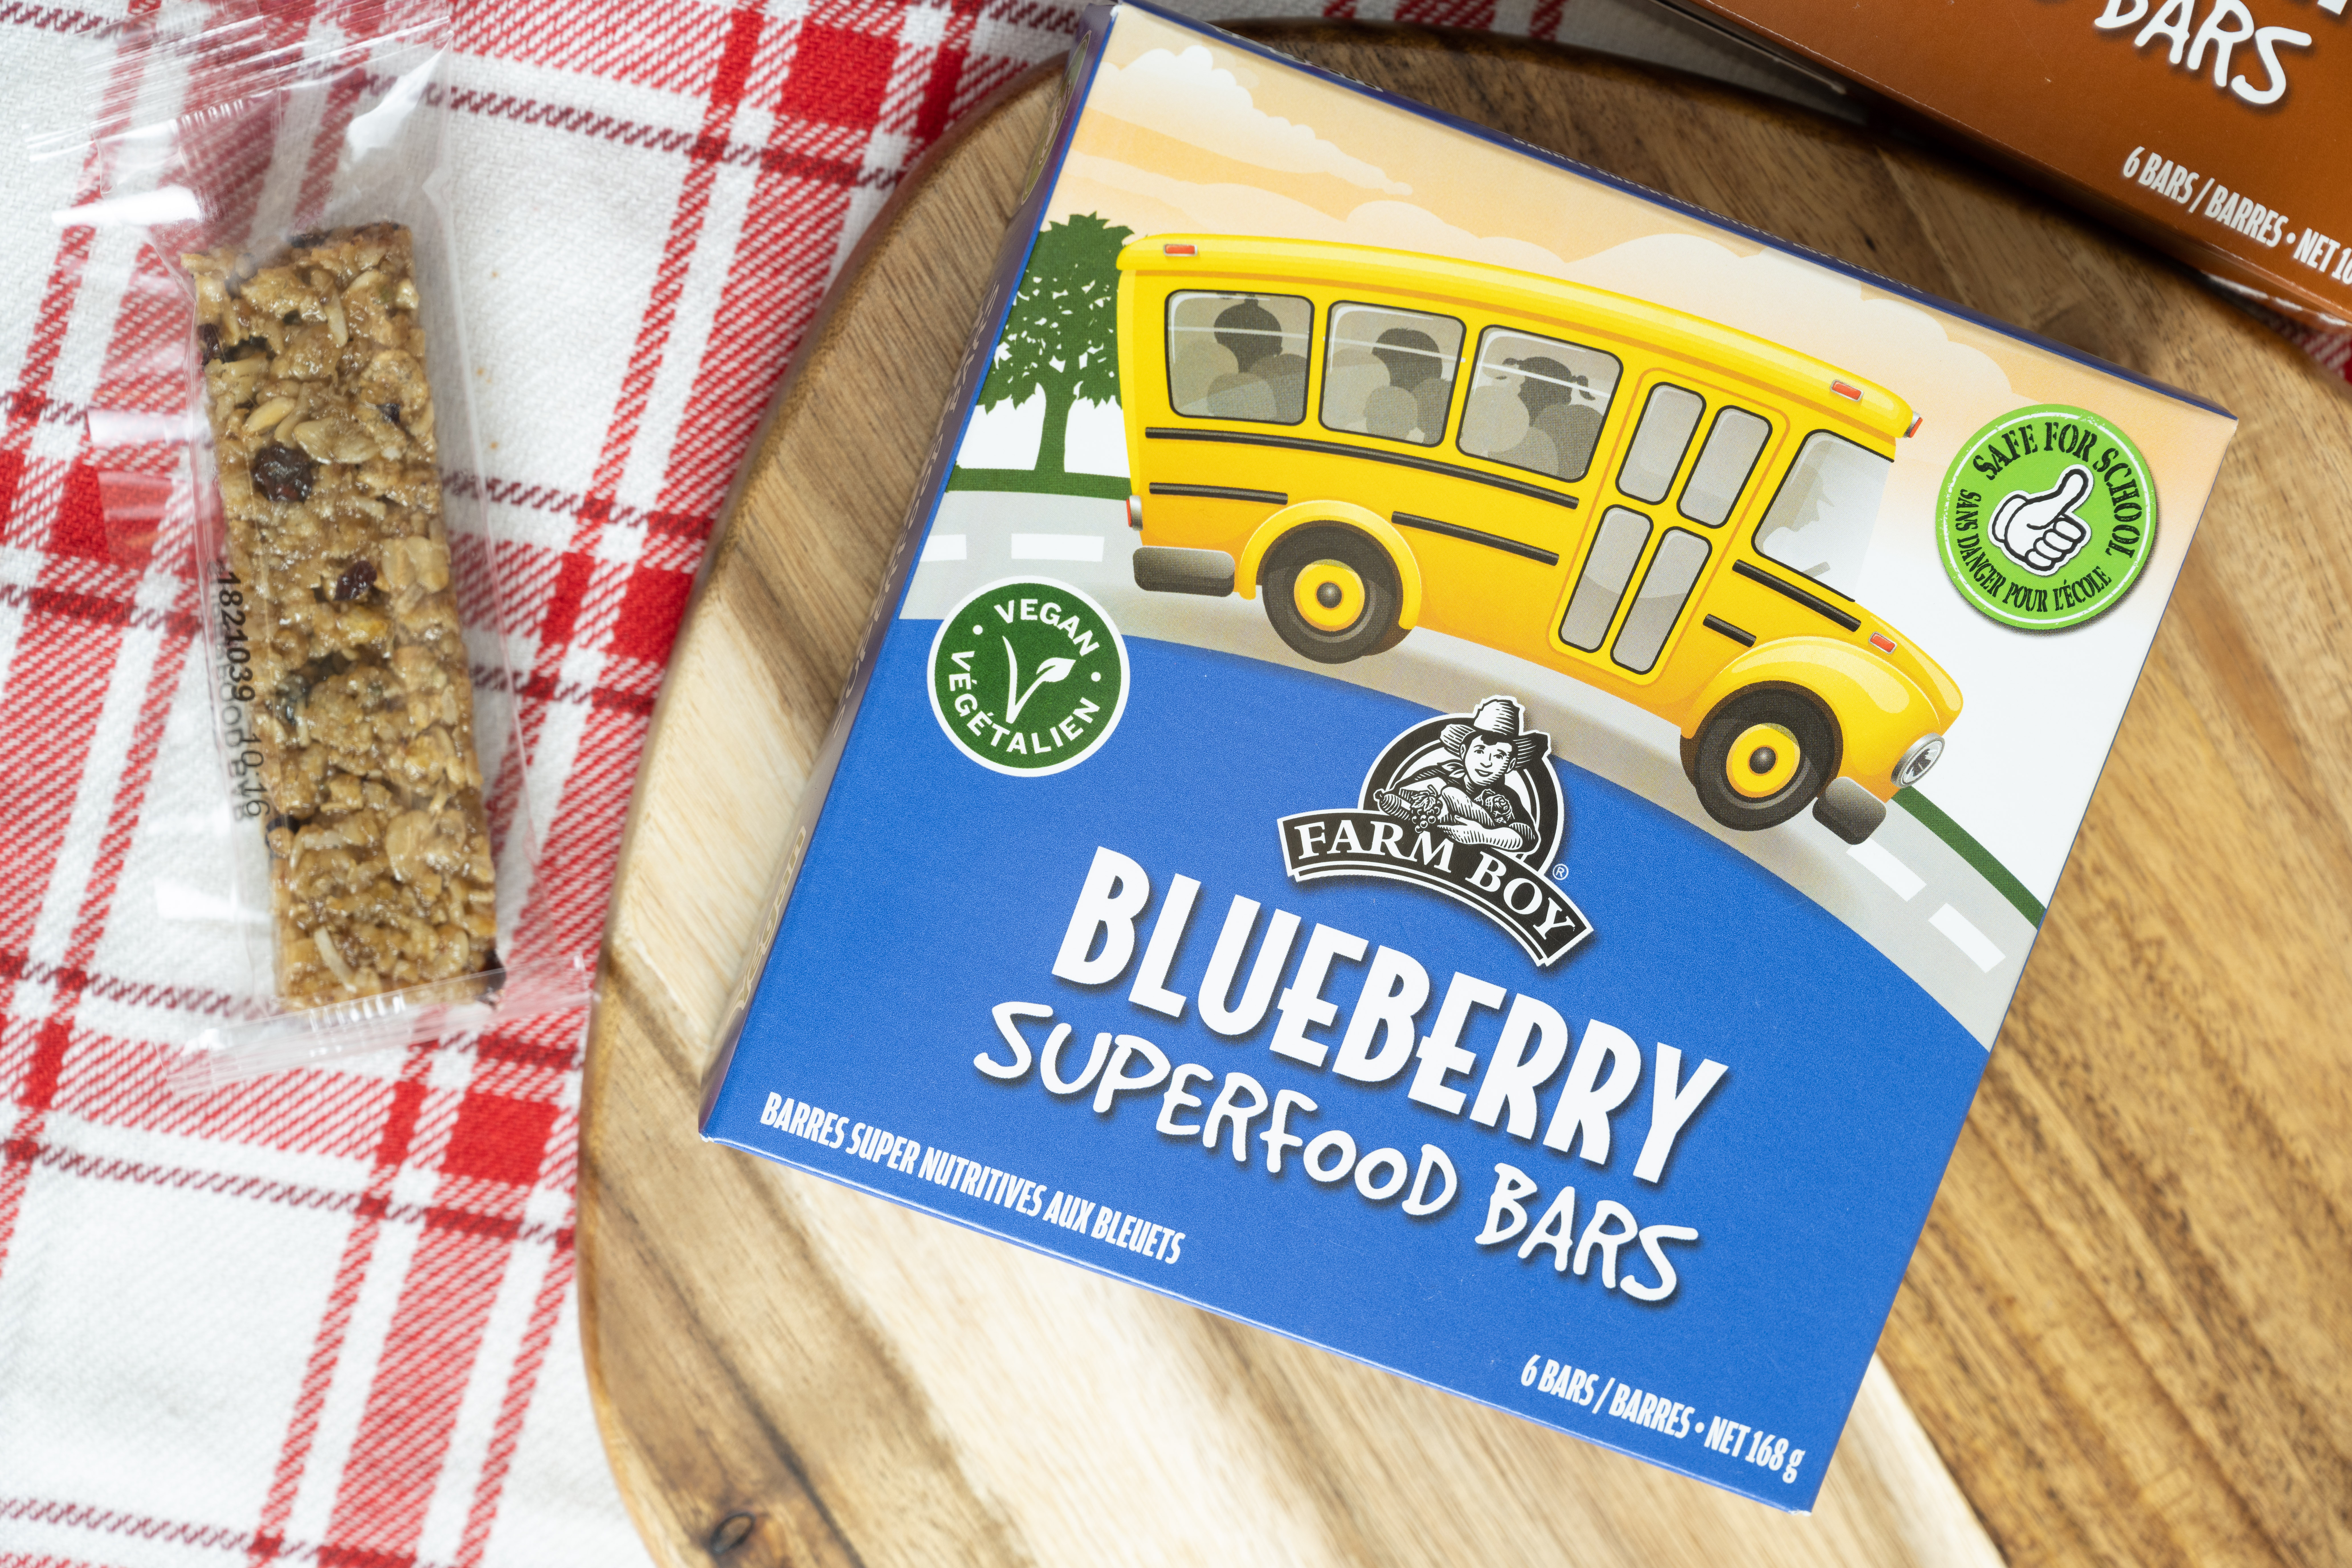 Blueberry Superfood Bar by Farm Boy